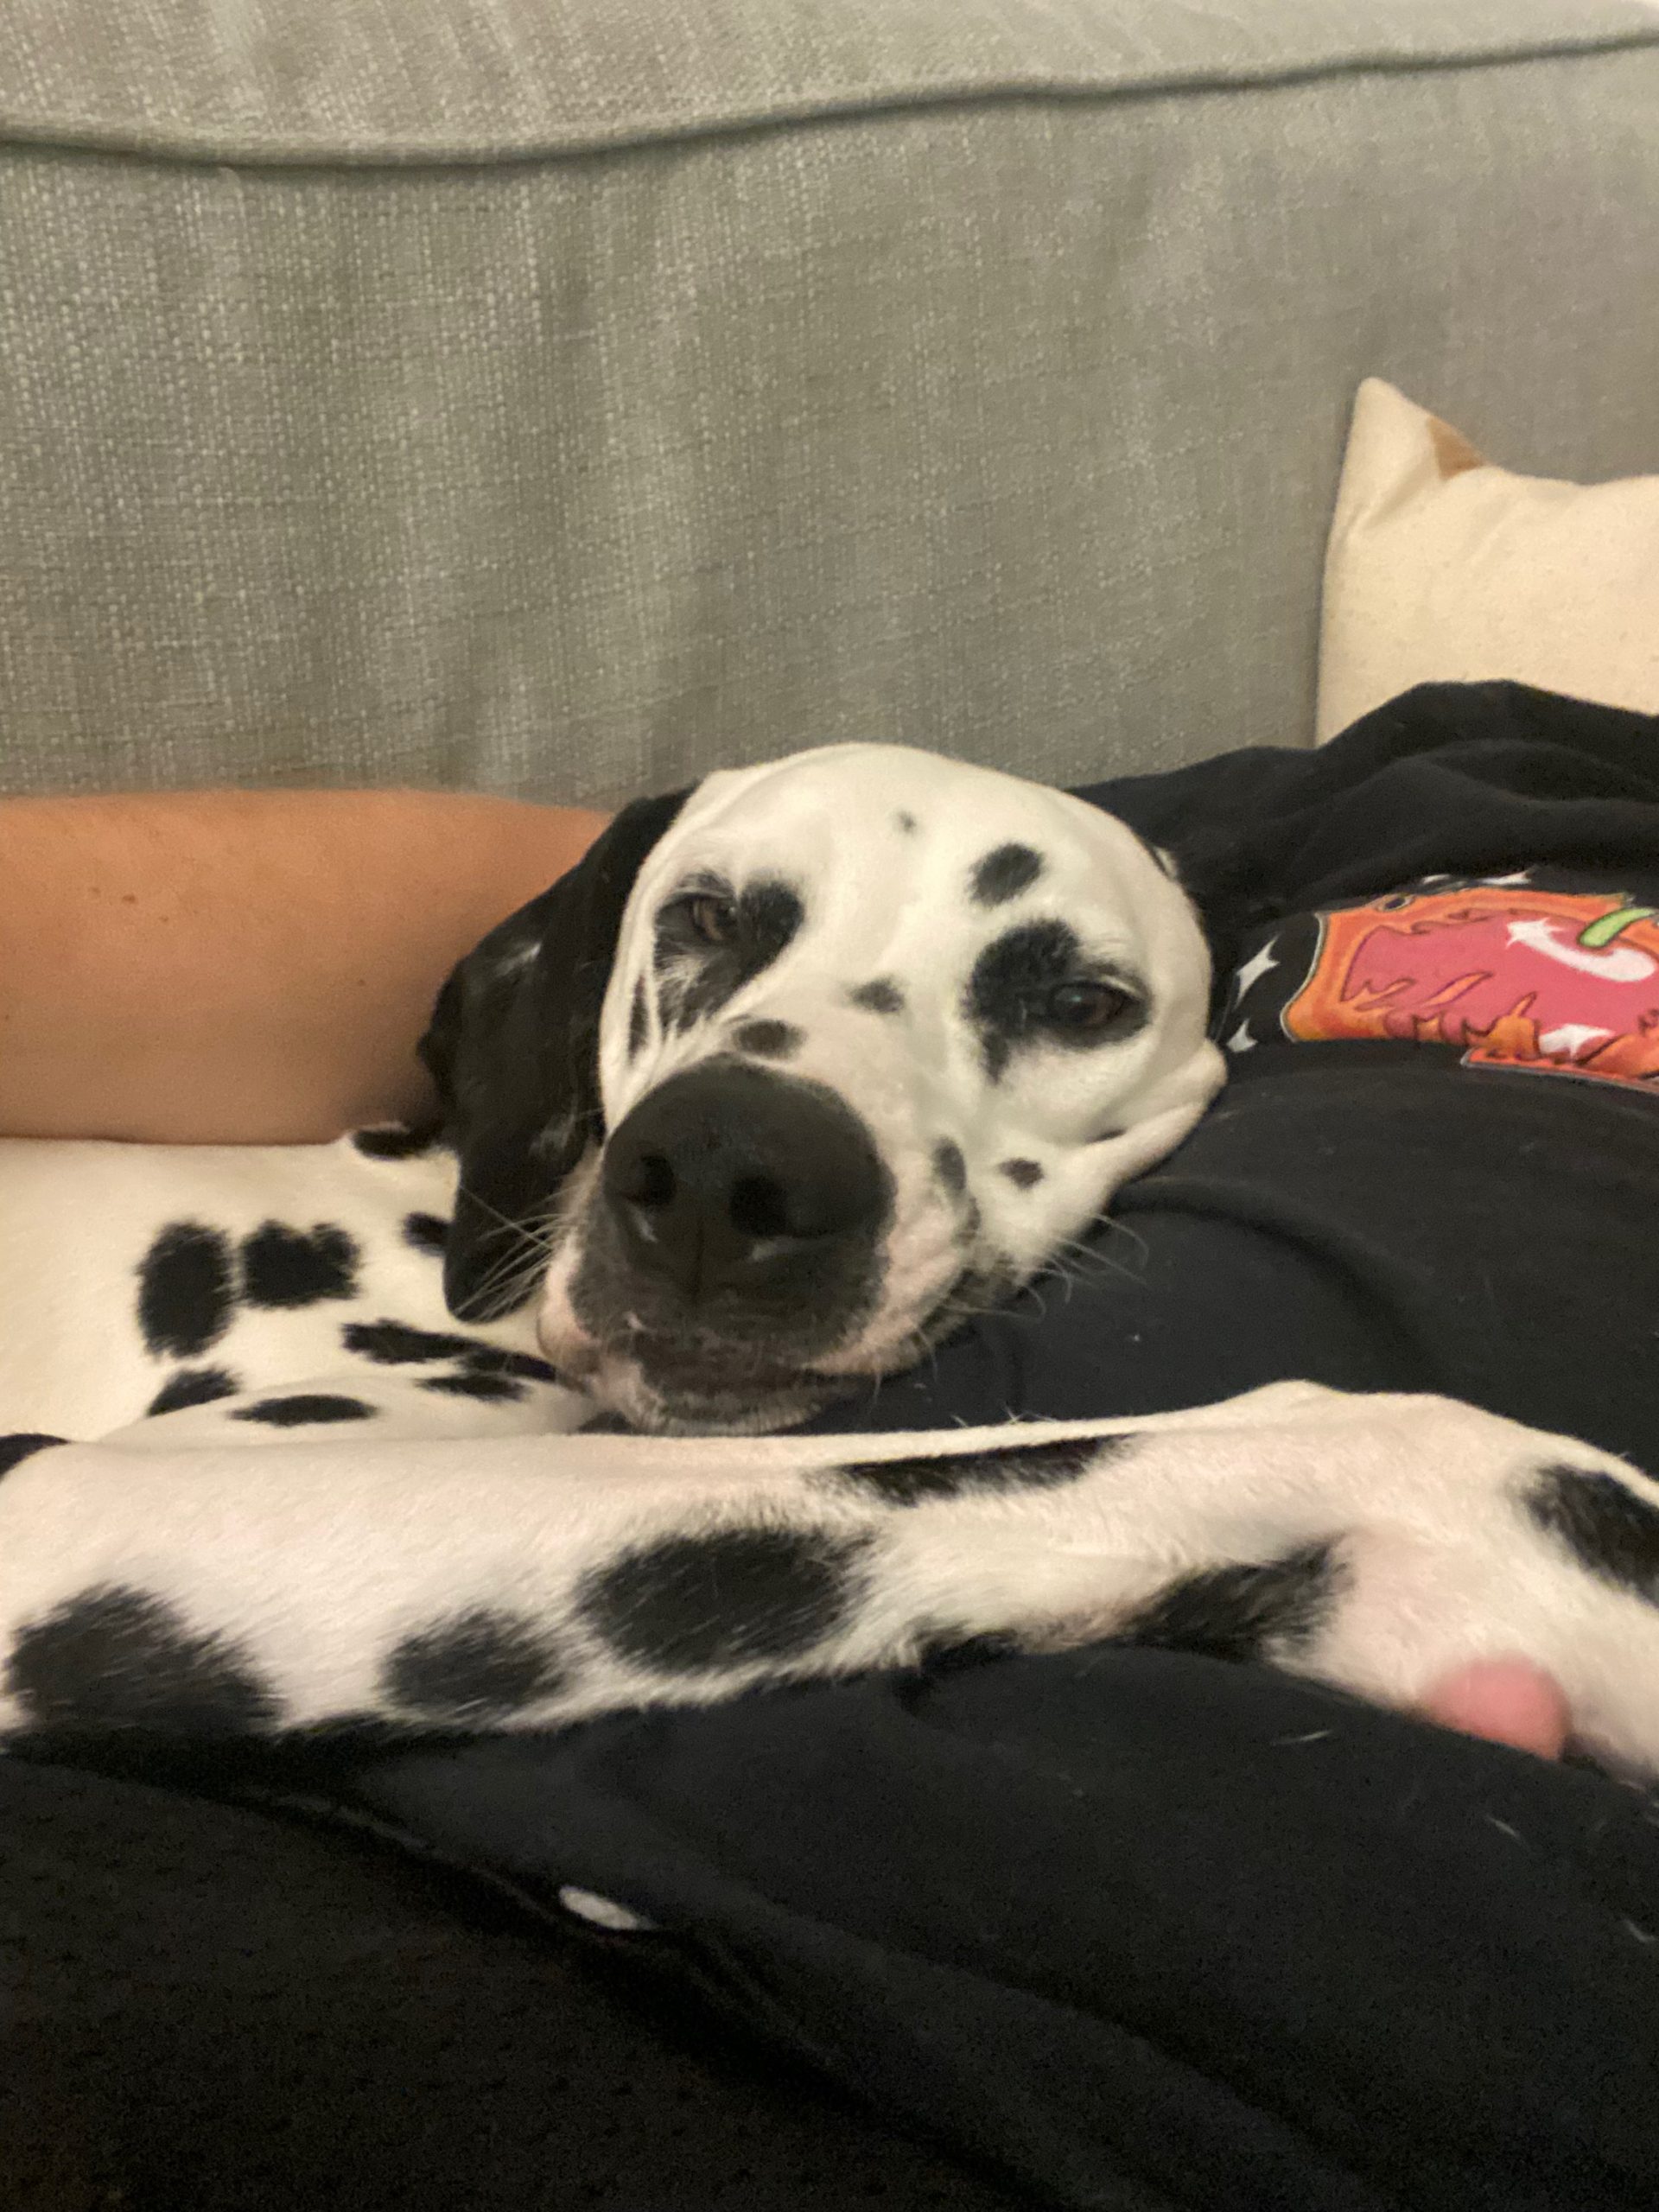 Dalmatian cuddling owner on a sofa